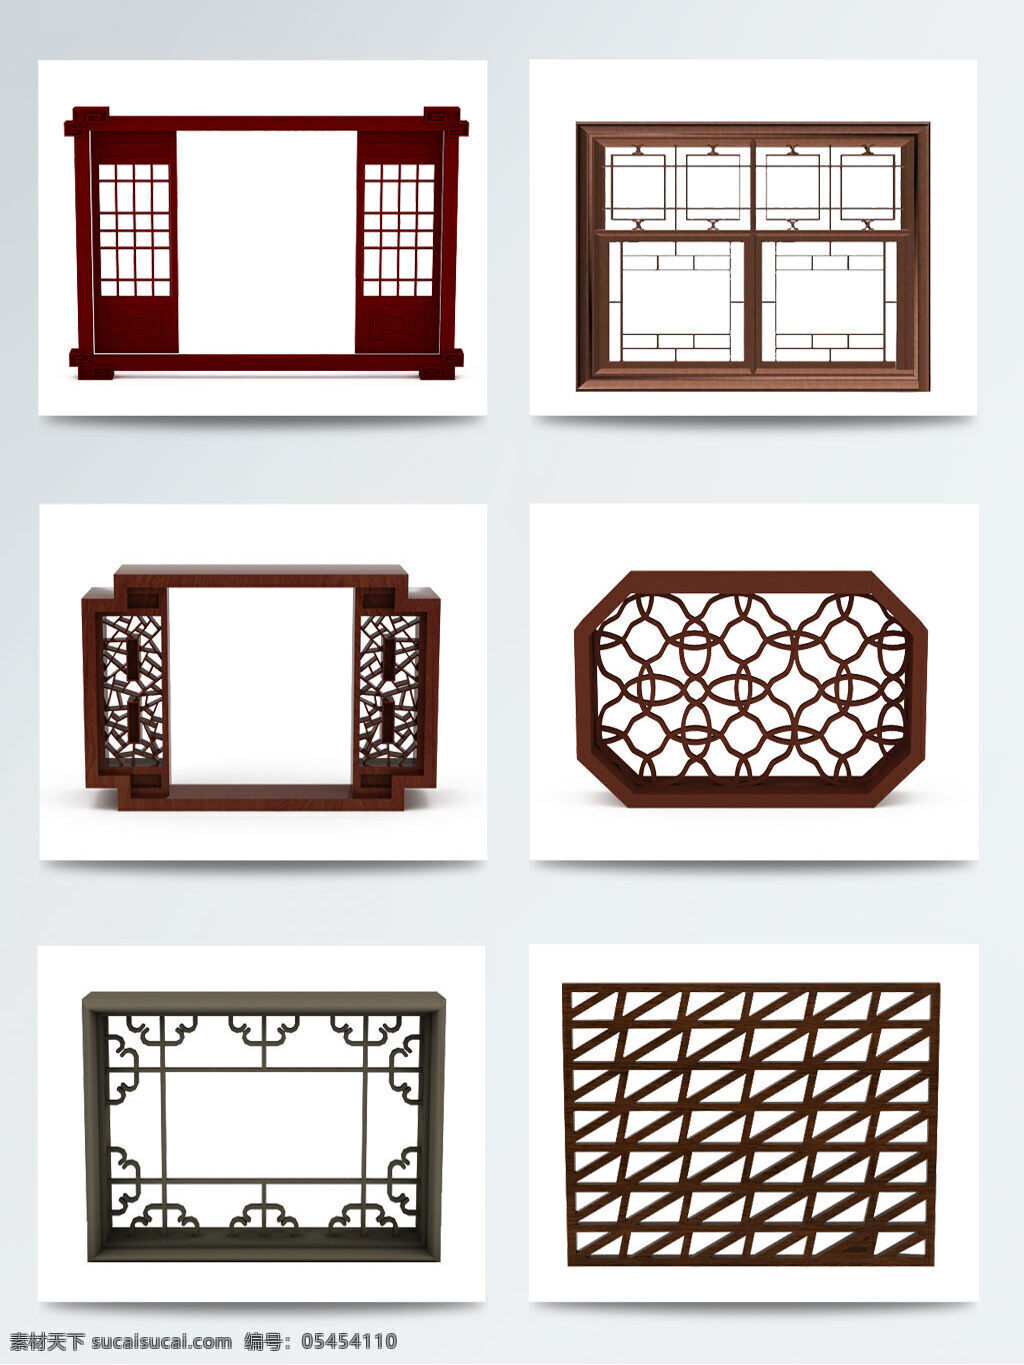 中国 风 木质 古典 窗户 传统 古代 古代窗户 古典窗户 古色古香 中国窗户 中国风 中式 中式窗户 中式古典窗户 装饰图案